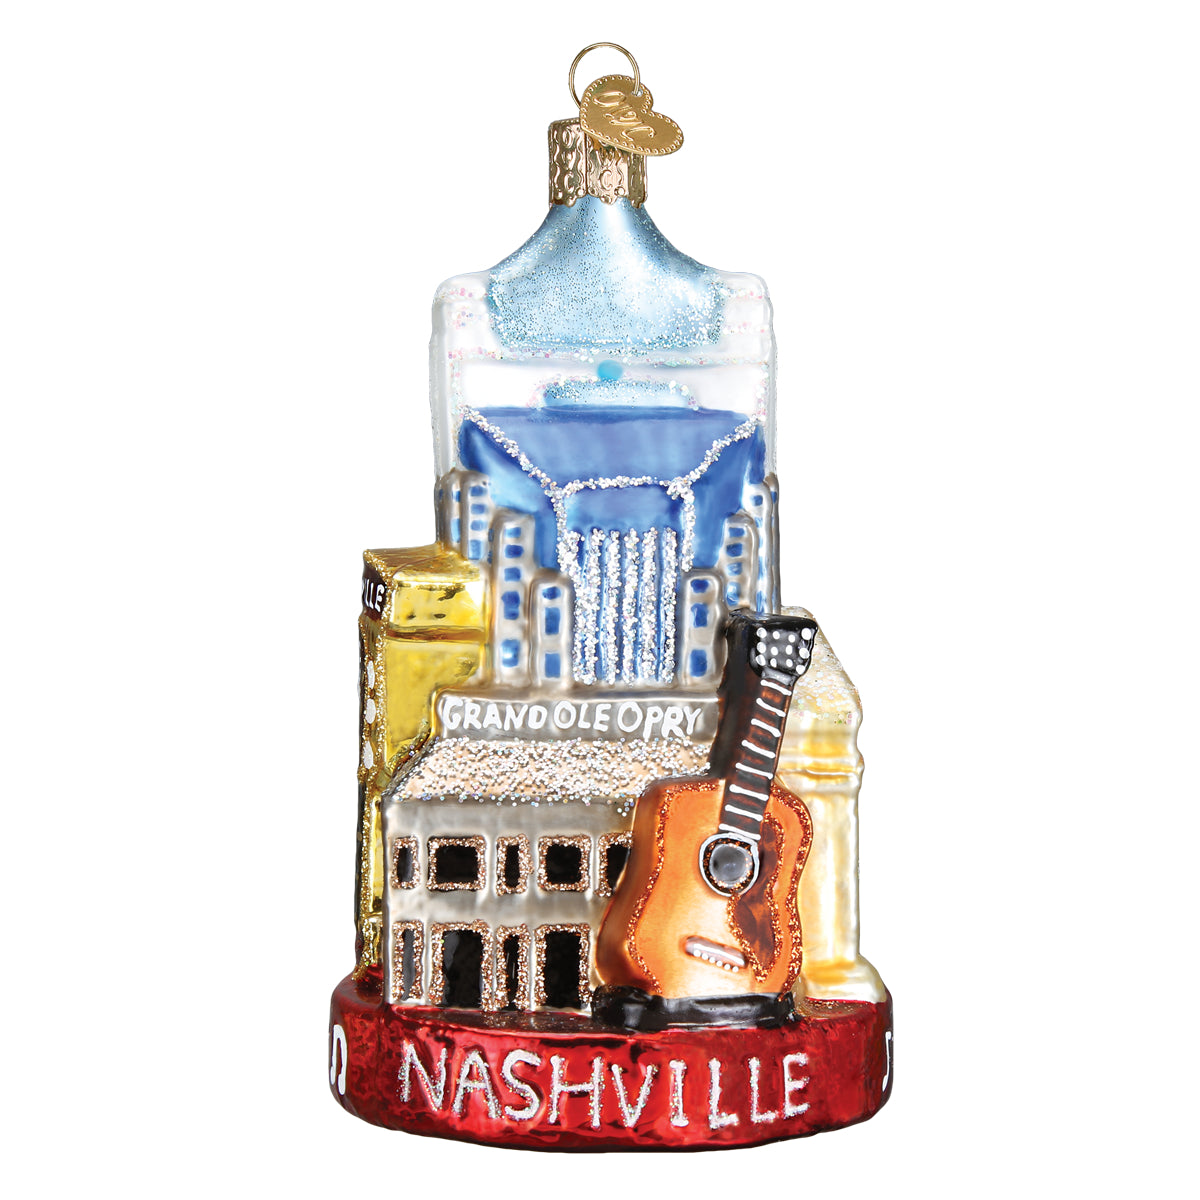 Nashville Ornament